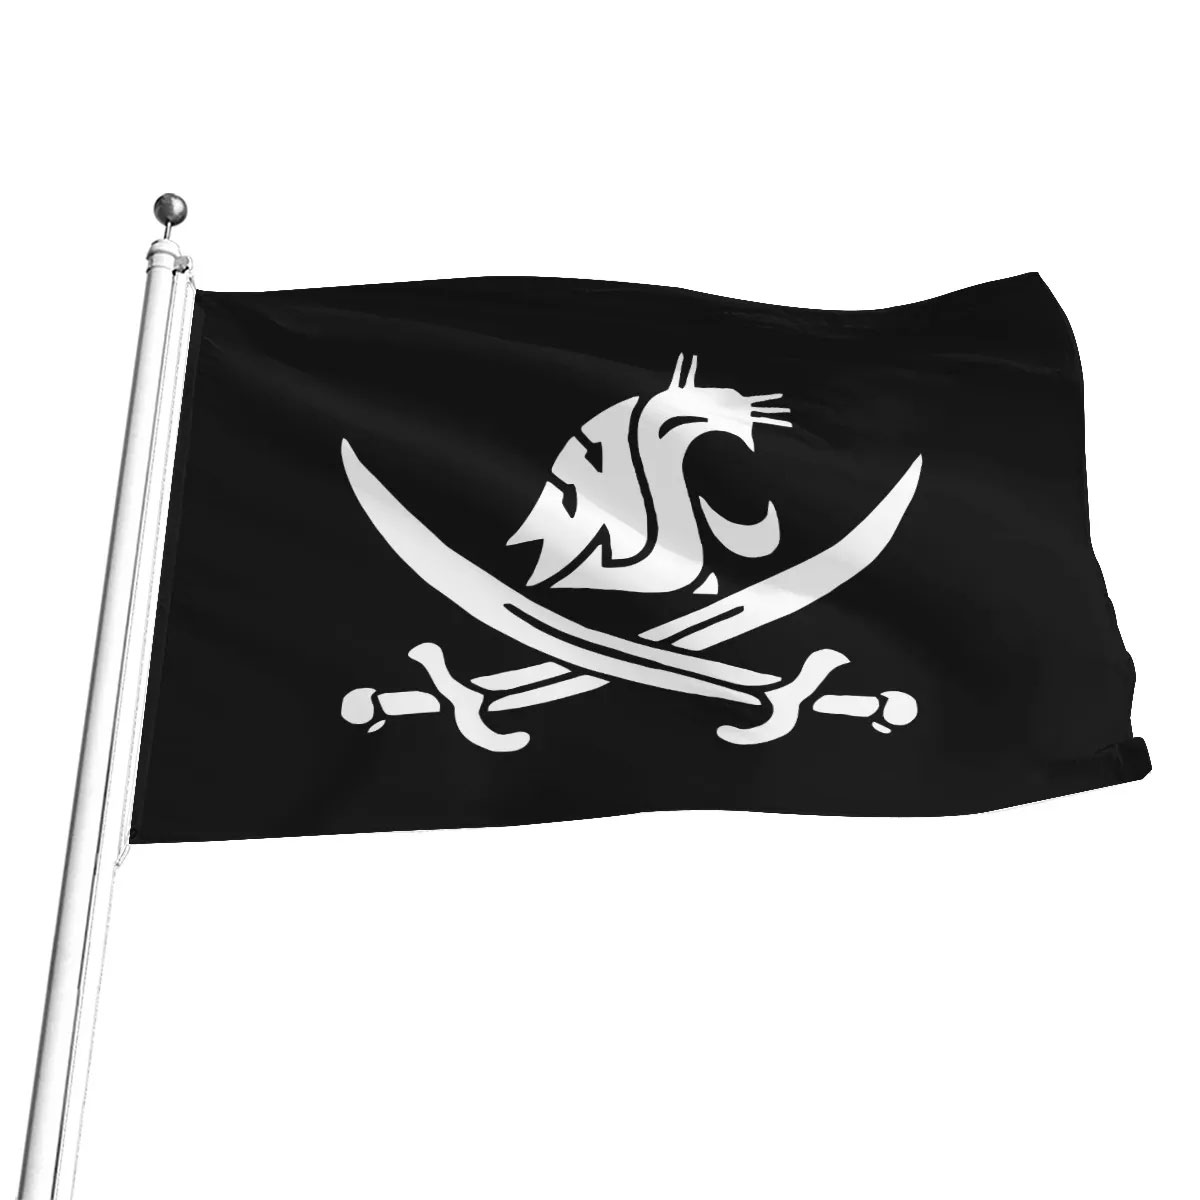 Coach Mike Leach Tribute WSU Pirate Flag - Zerelam